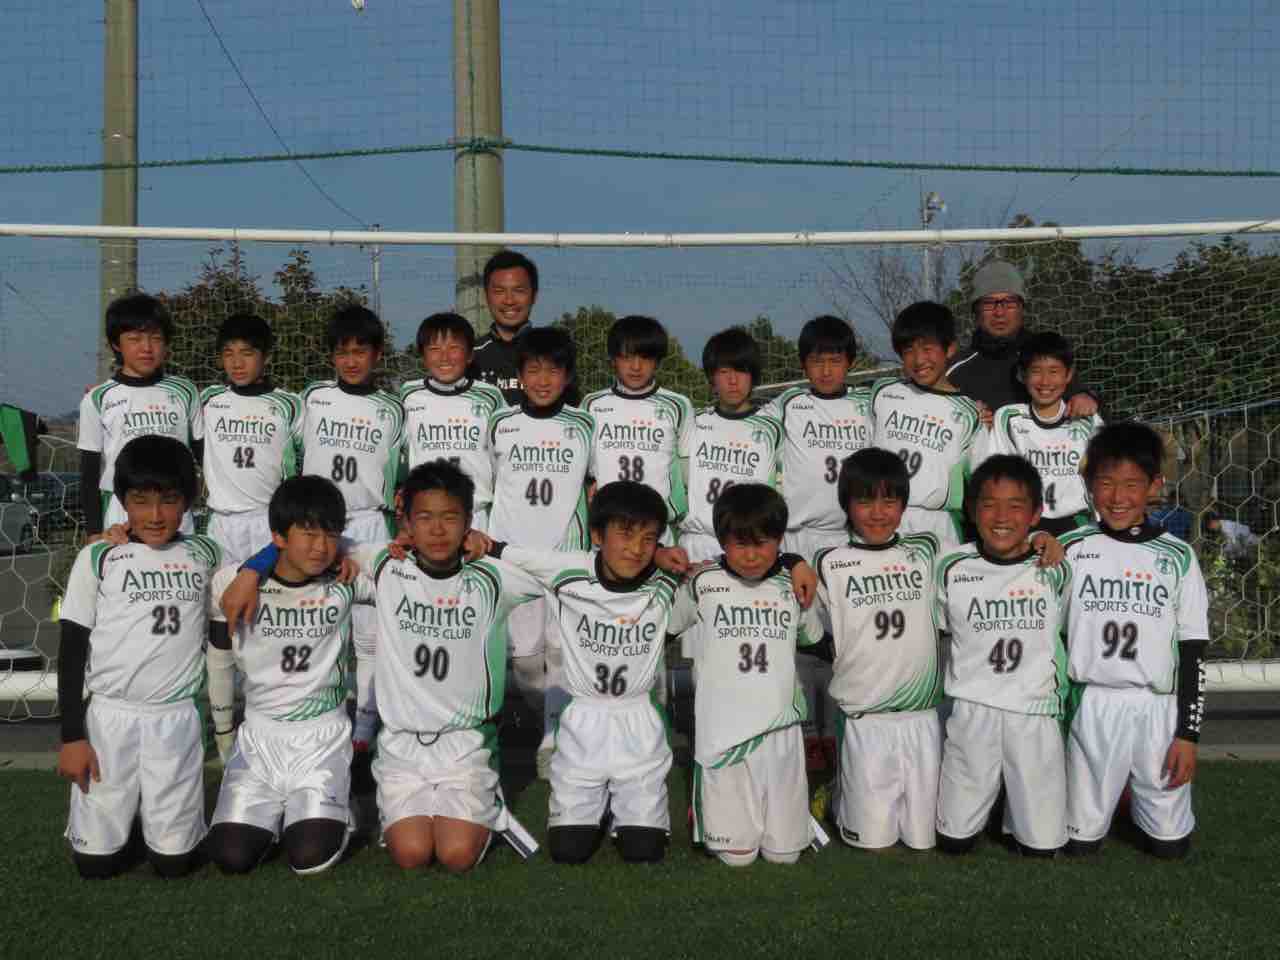 滋賀アカデミー6年生春合宿 滋賀県 サッカー教室 アミティエ 蓑方直輝のブログ